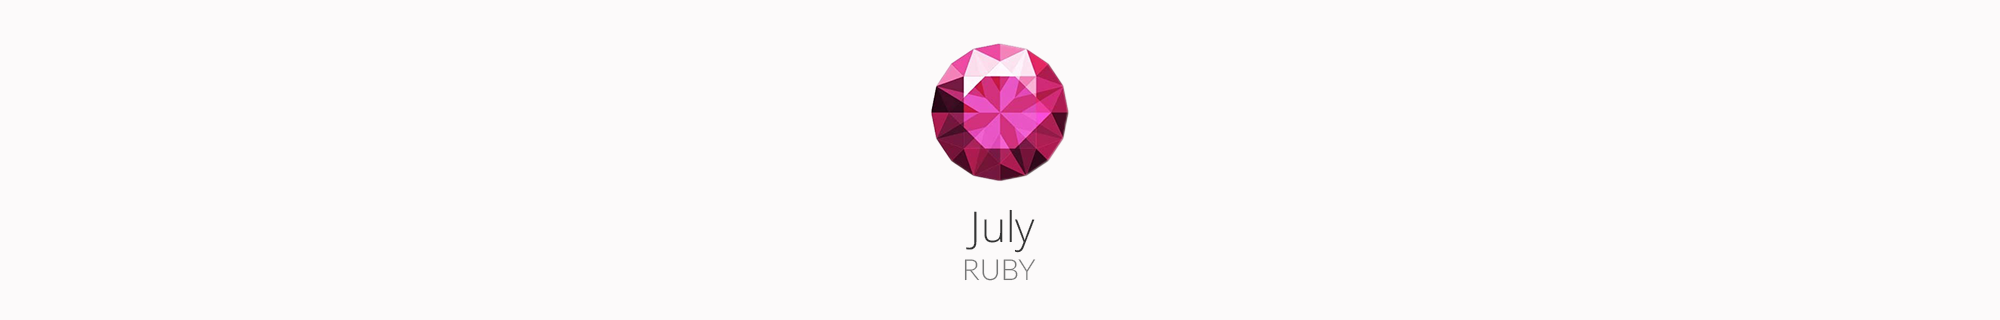 July - Ruyb